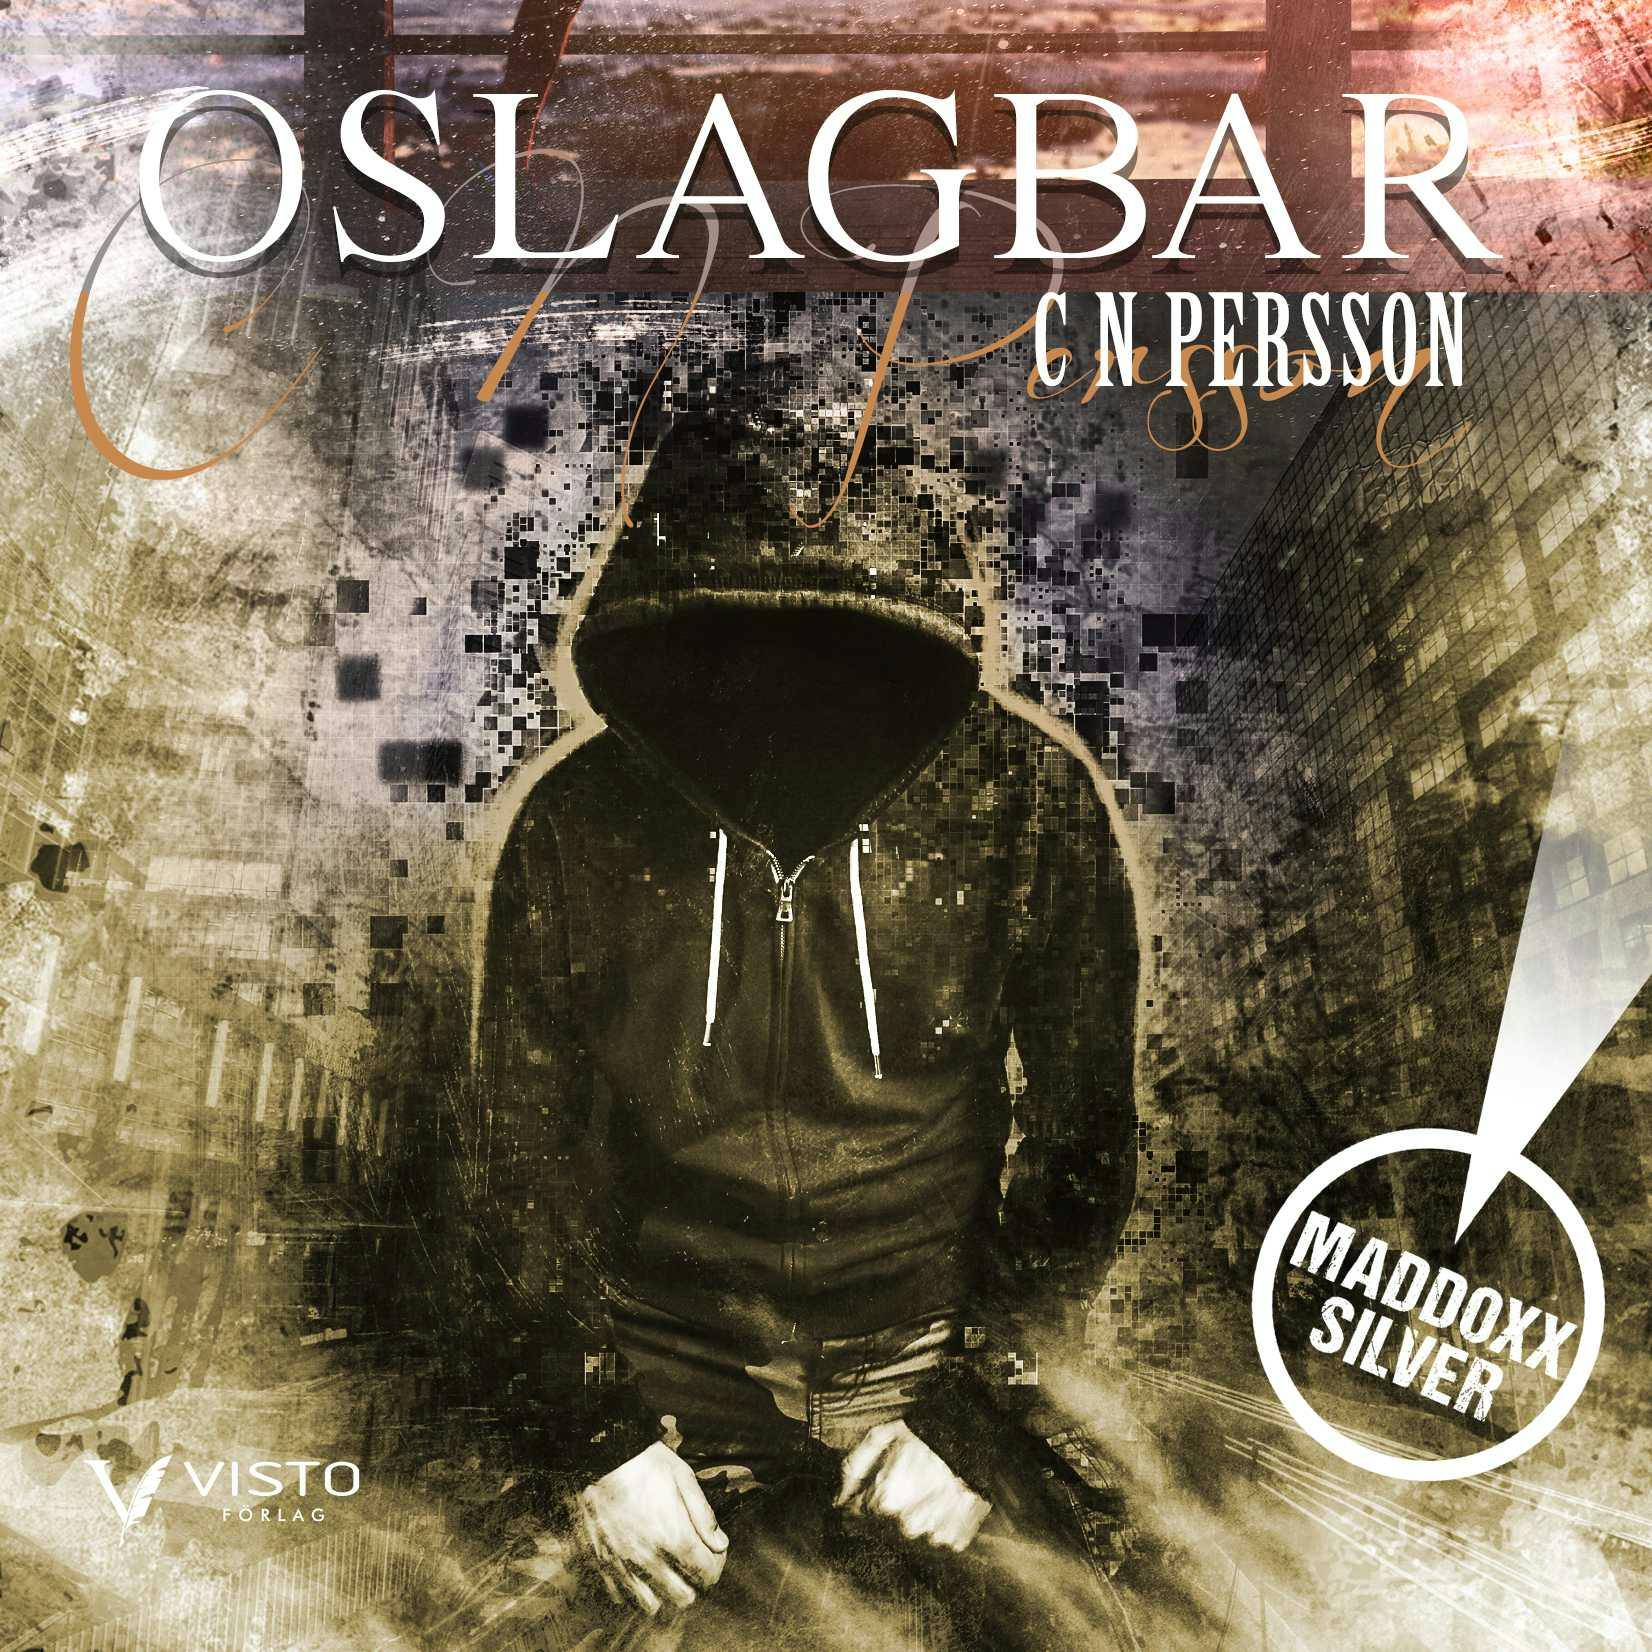 Oslagbar - C N Persson